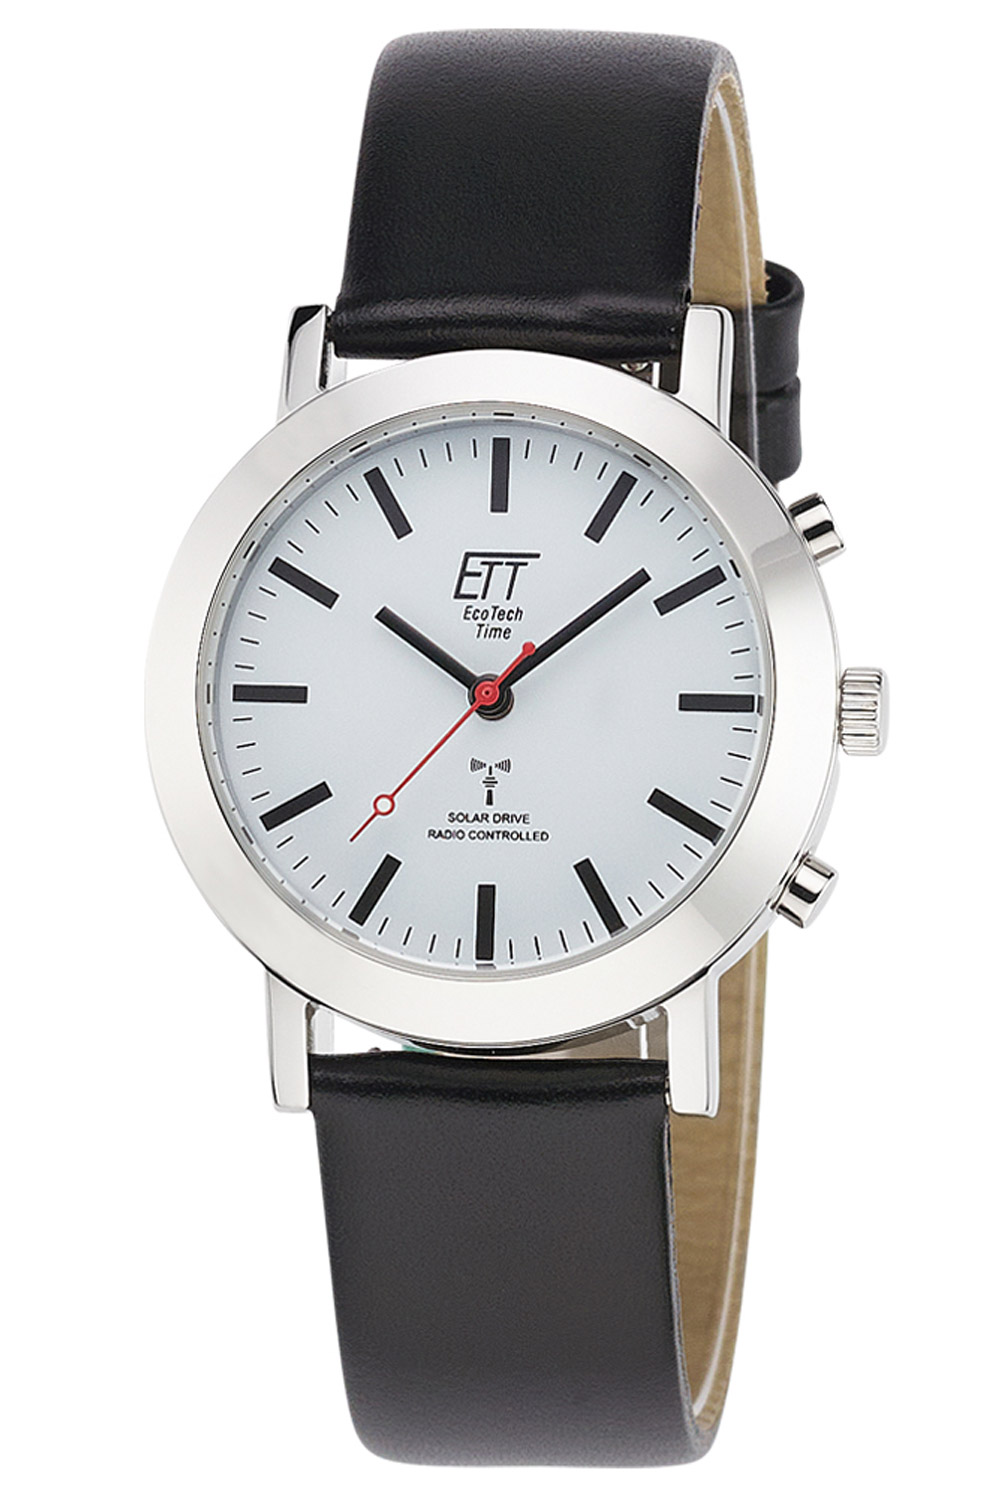 ETT Eco Tech ELS-11581-11L Funk-Solar Time